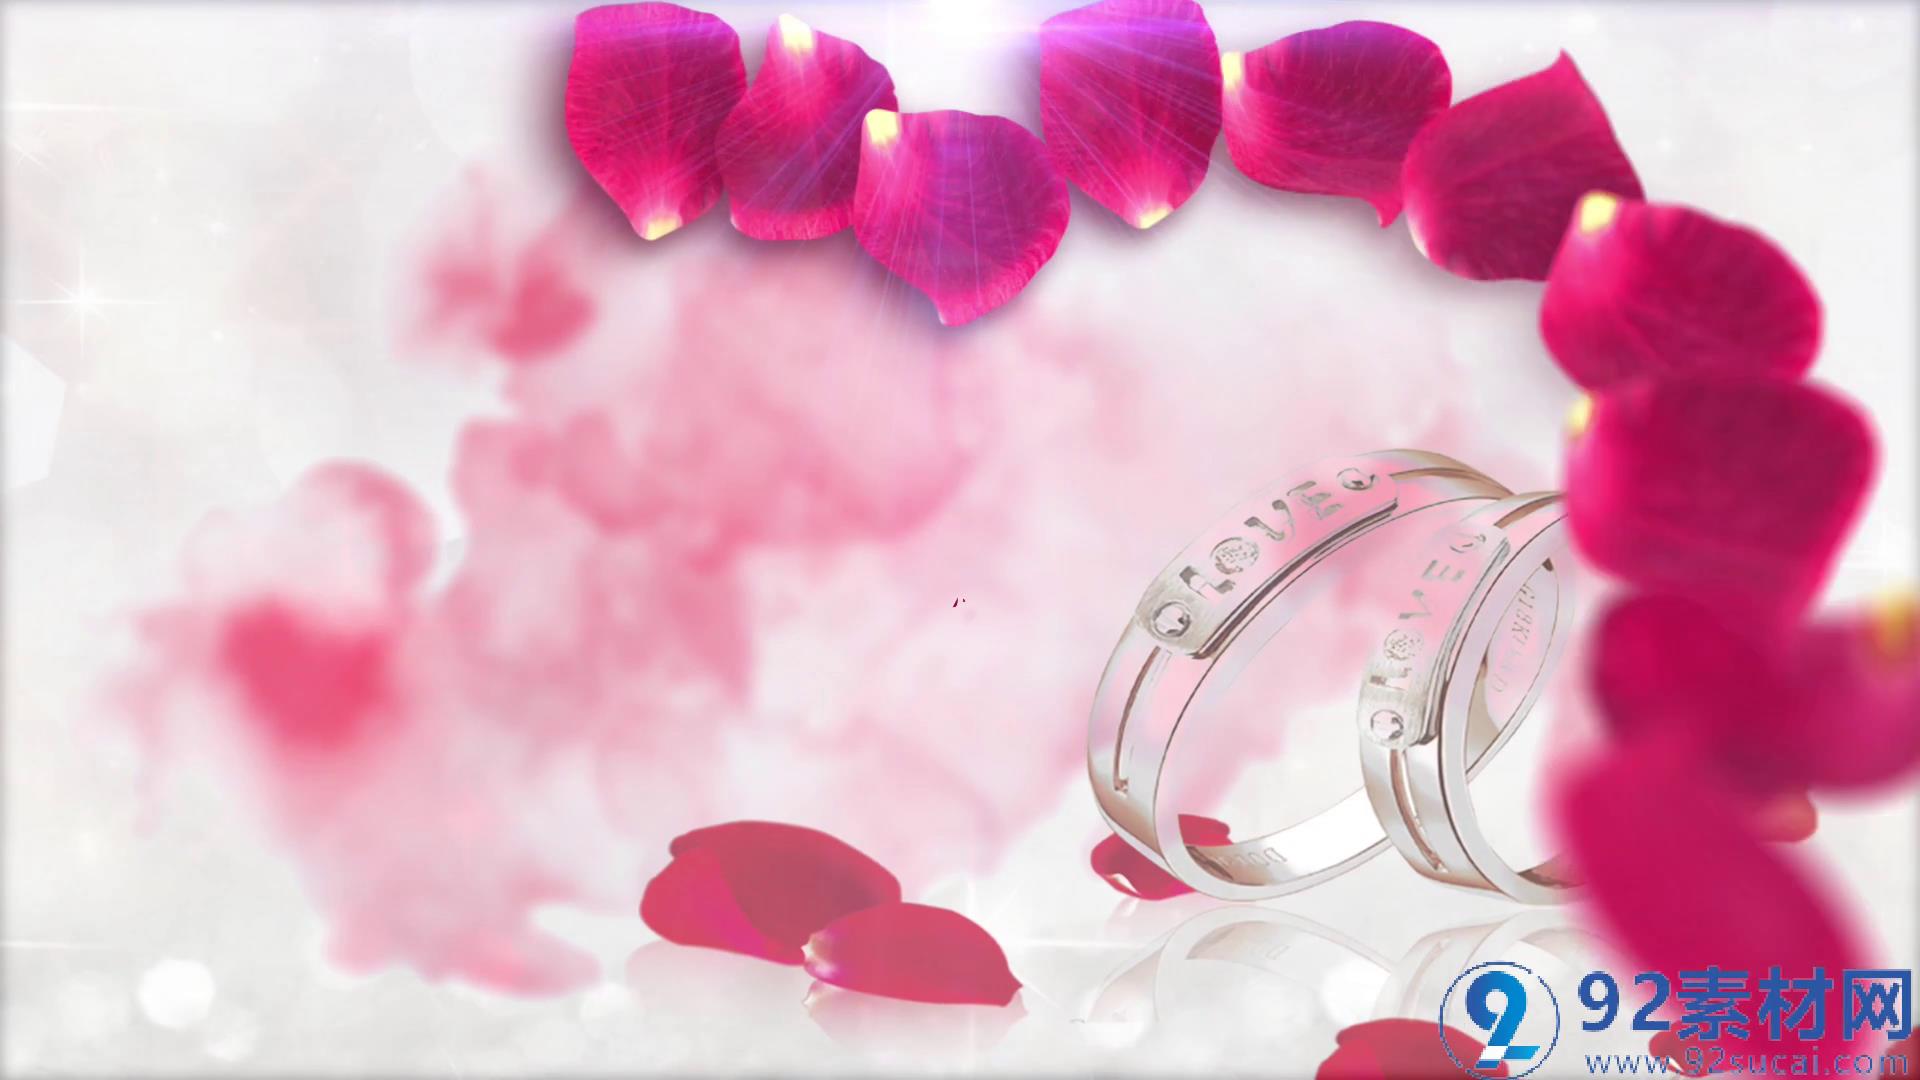 唯美浪漫玫瑰花瓣戒指点缀婚礼视频开场字幕展示ae素材